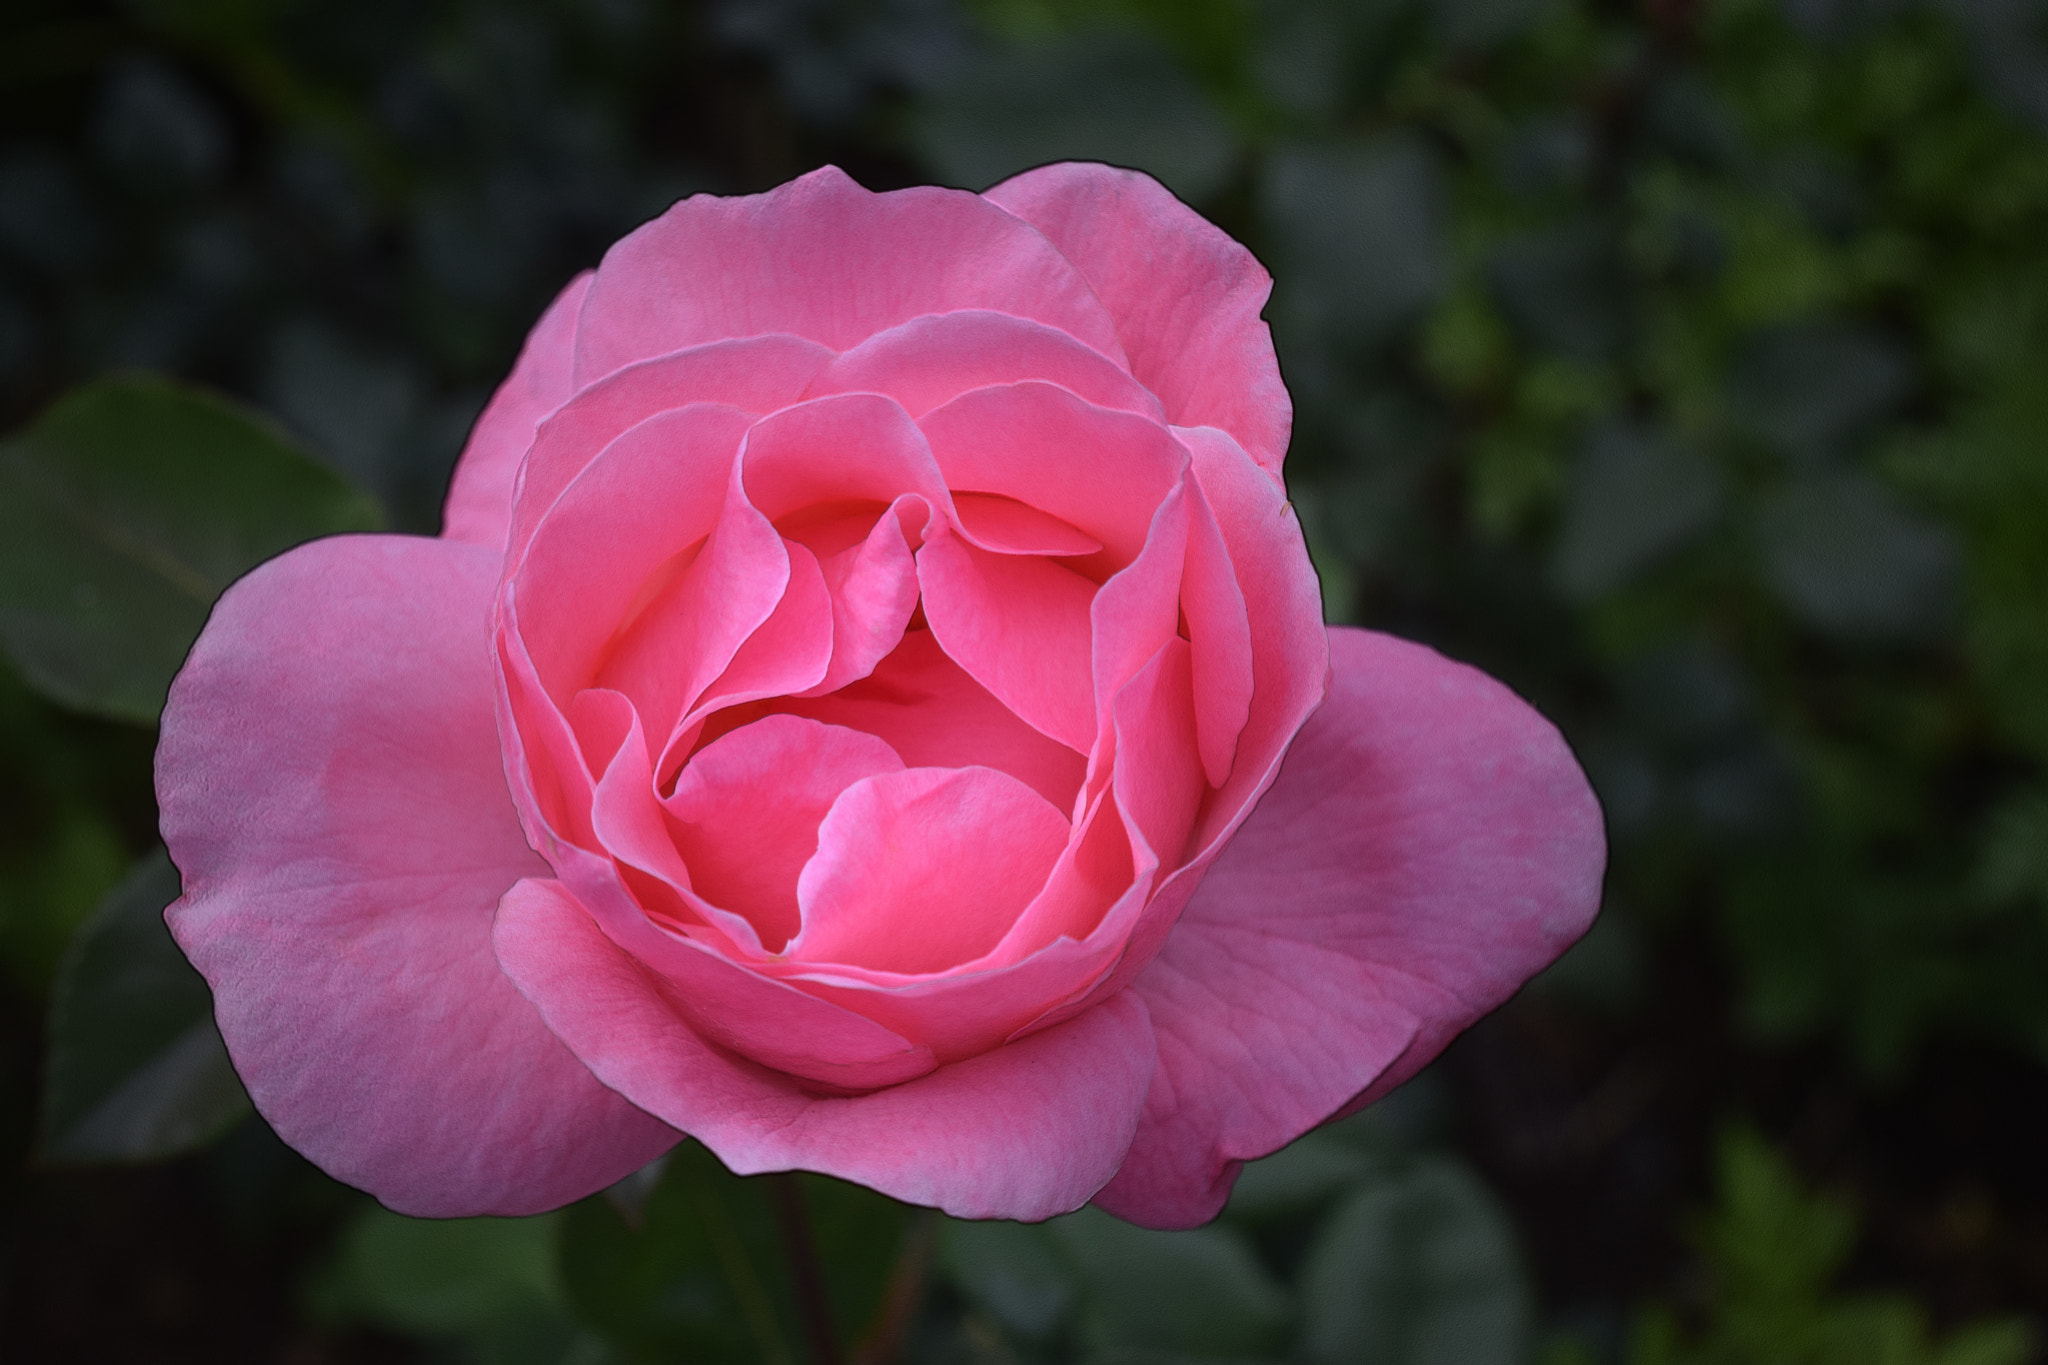 Nikon D5300 sample photo. Pink rose photography